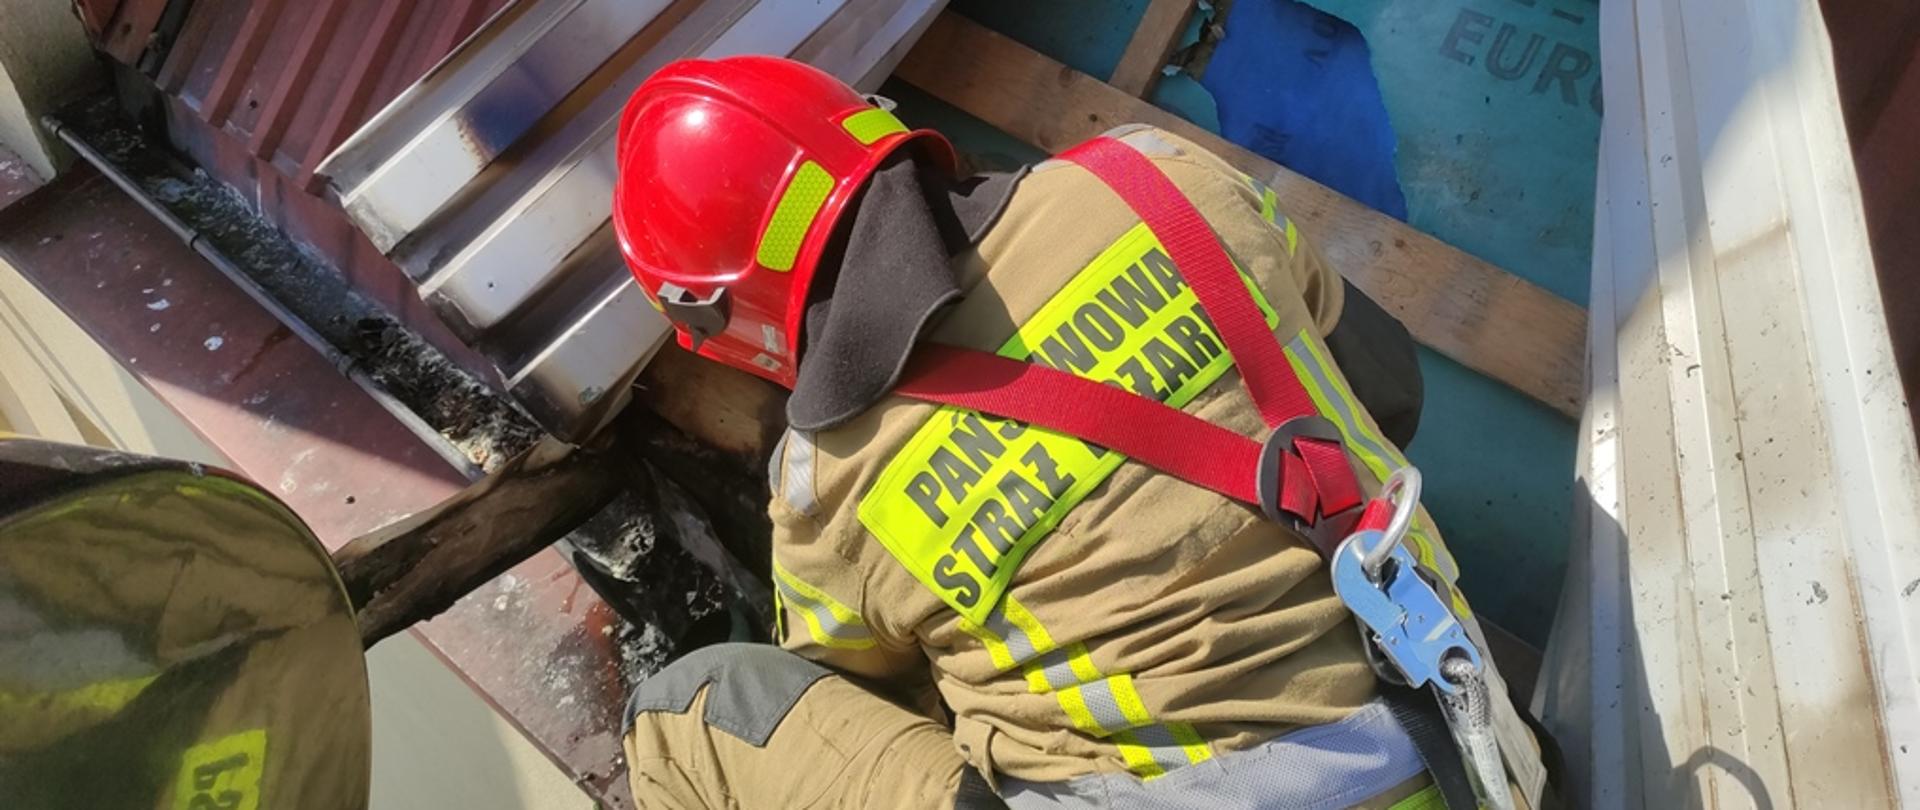 Strażak odwrócony plecami, ubrany w ubranie specjalne, zabezpieczony szelkami i lonżą, pracuje z kosza podnośnika podczas likwidowania zarzewi ognia w konstrukcji dachu 